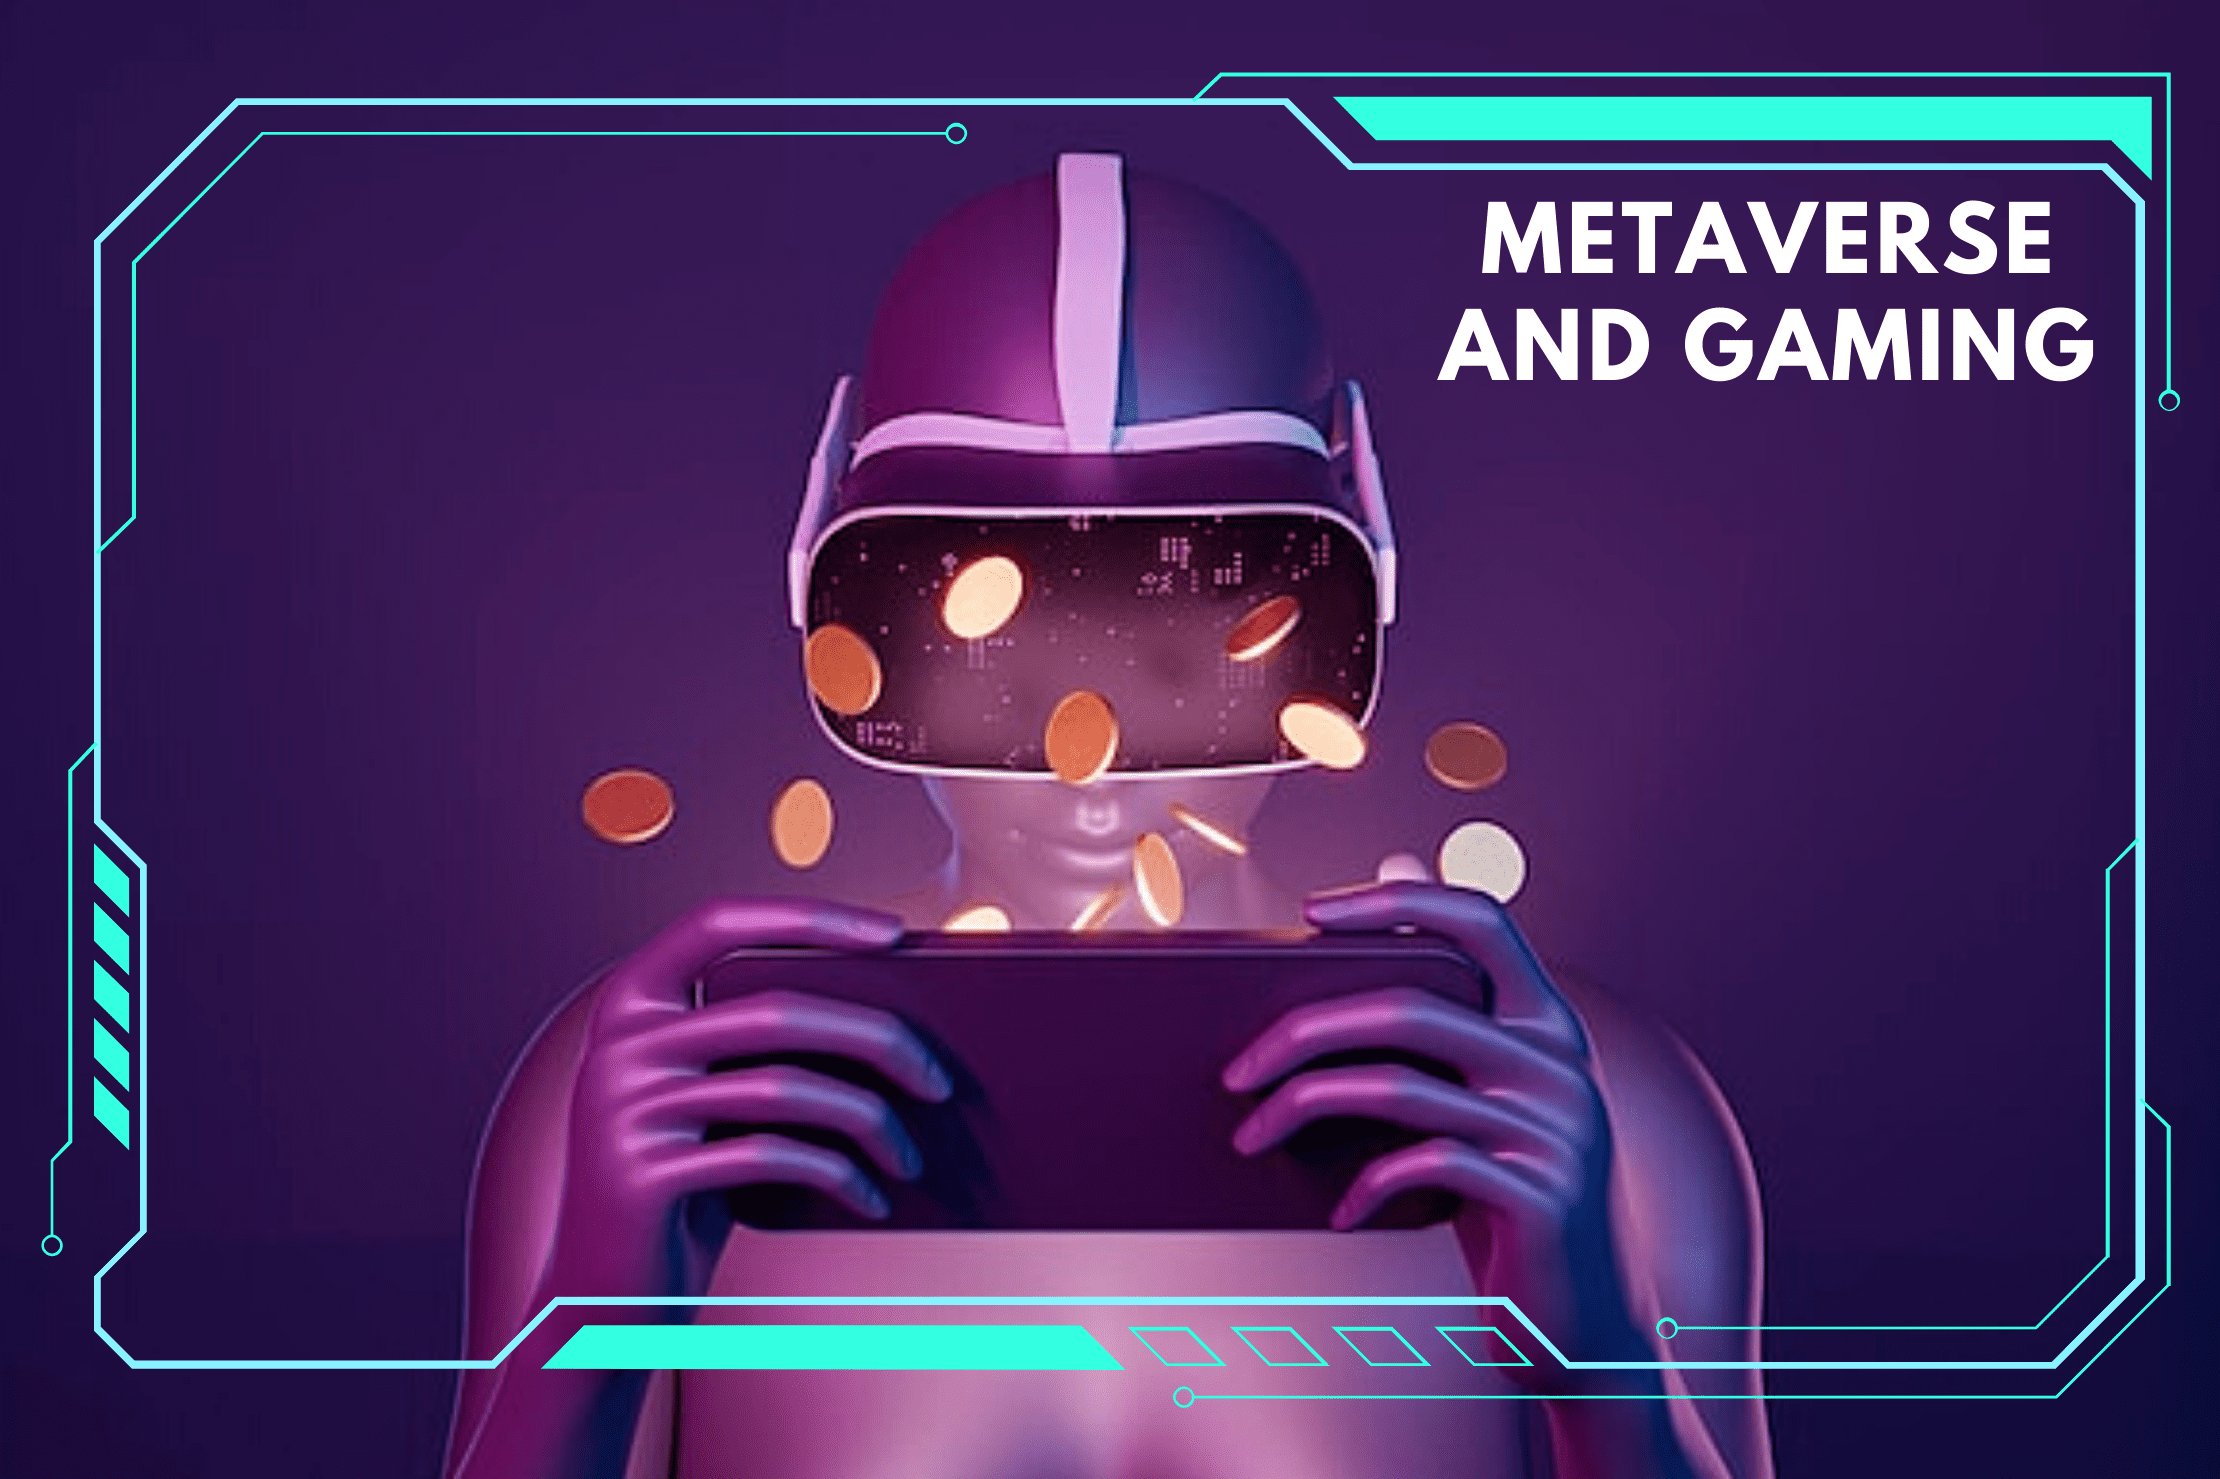 Metaverse VR Gaming And Web 3.0 Gaming